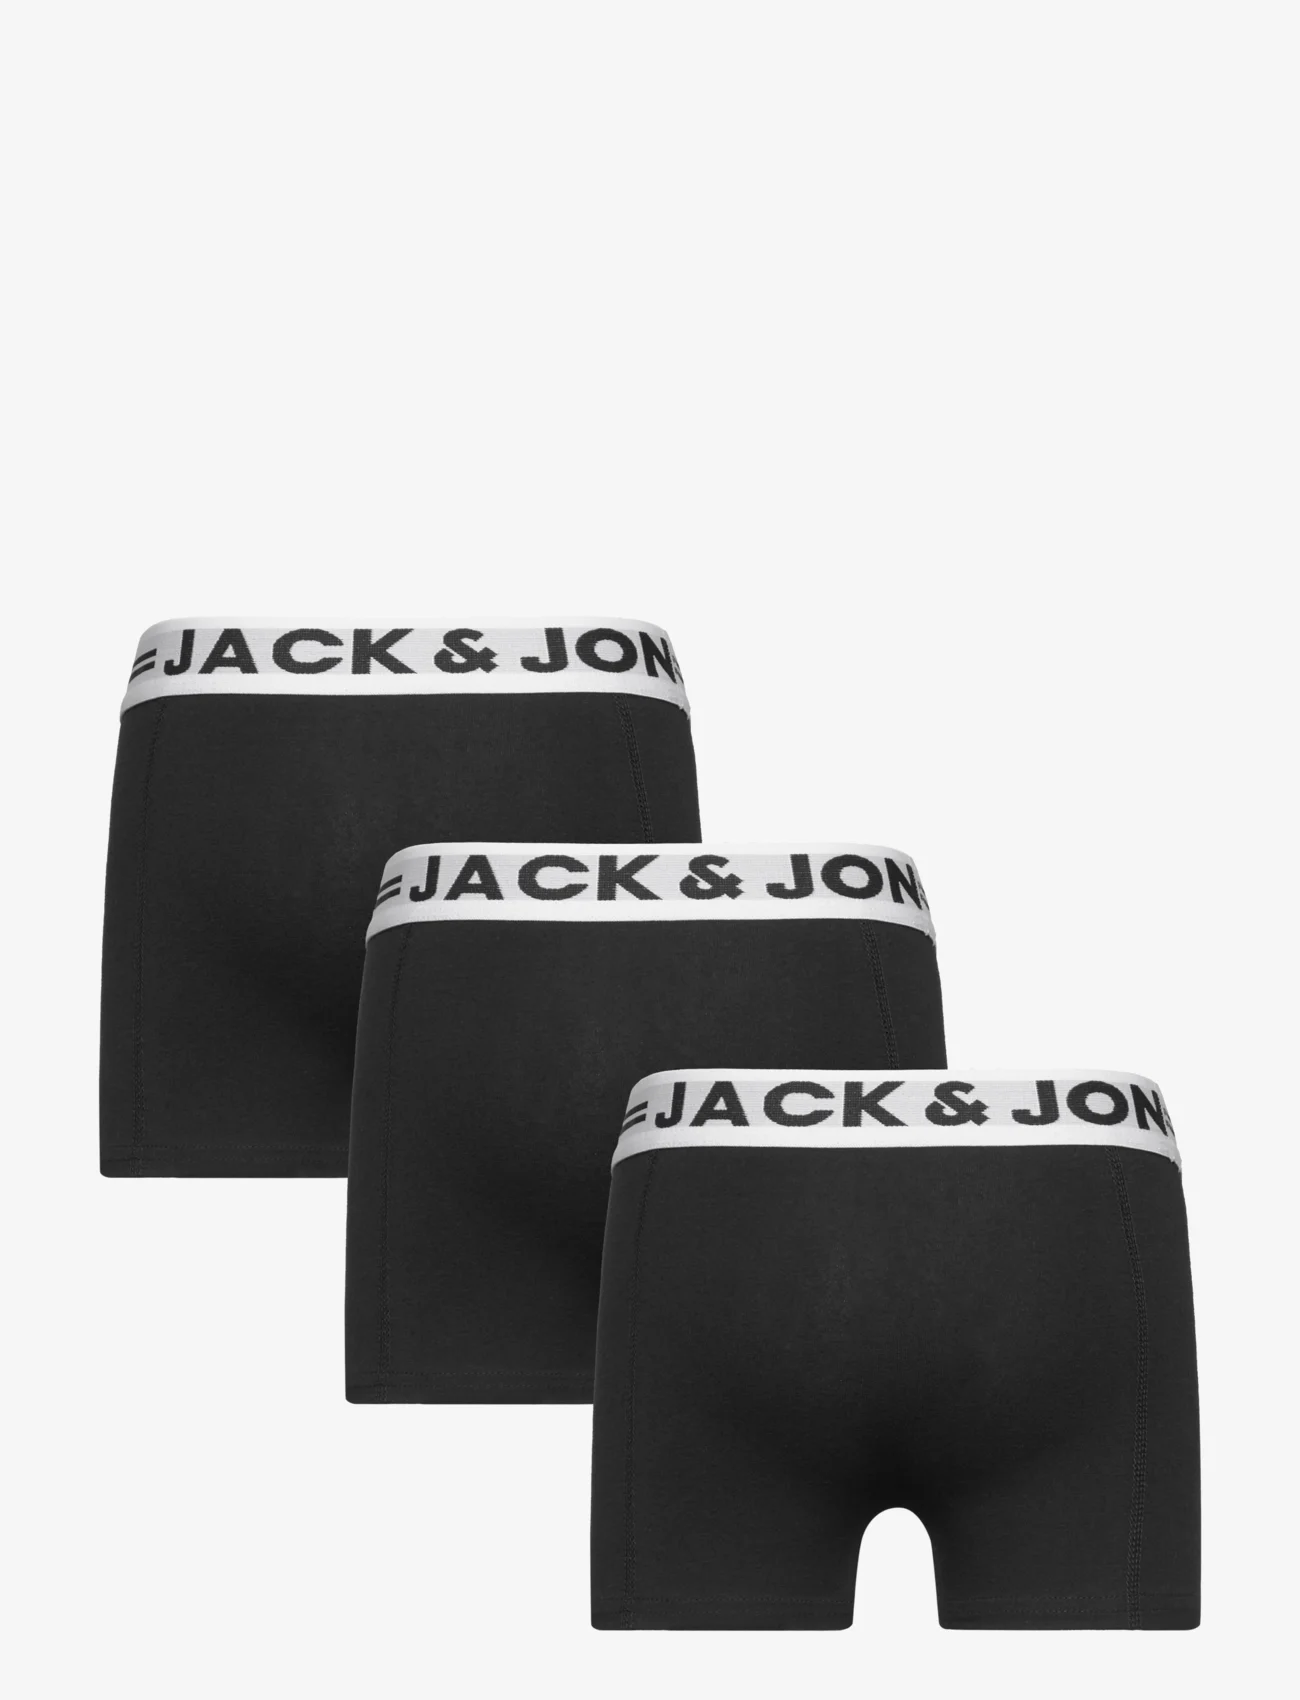 Jack & Jones - SENSE TRUNKS 3-PACK NOOS MNI - underpants - black - 1